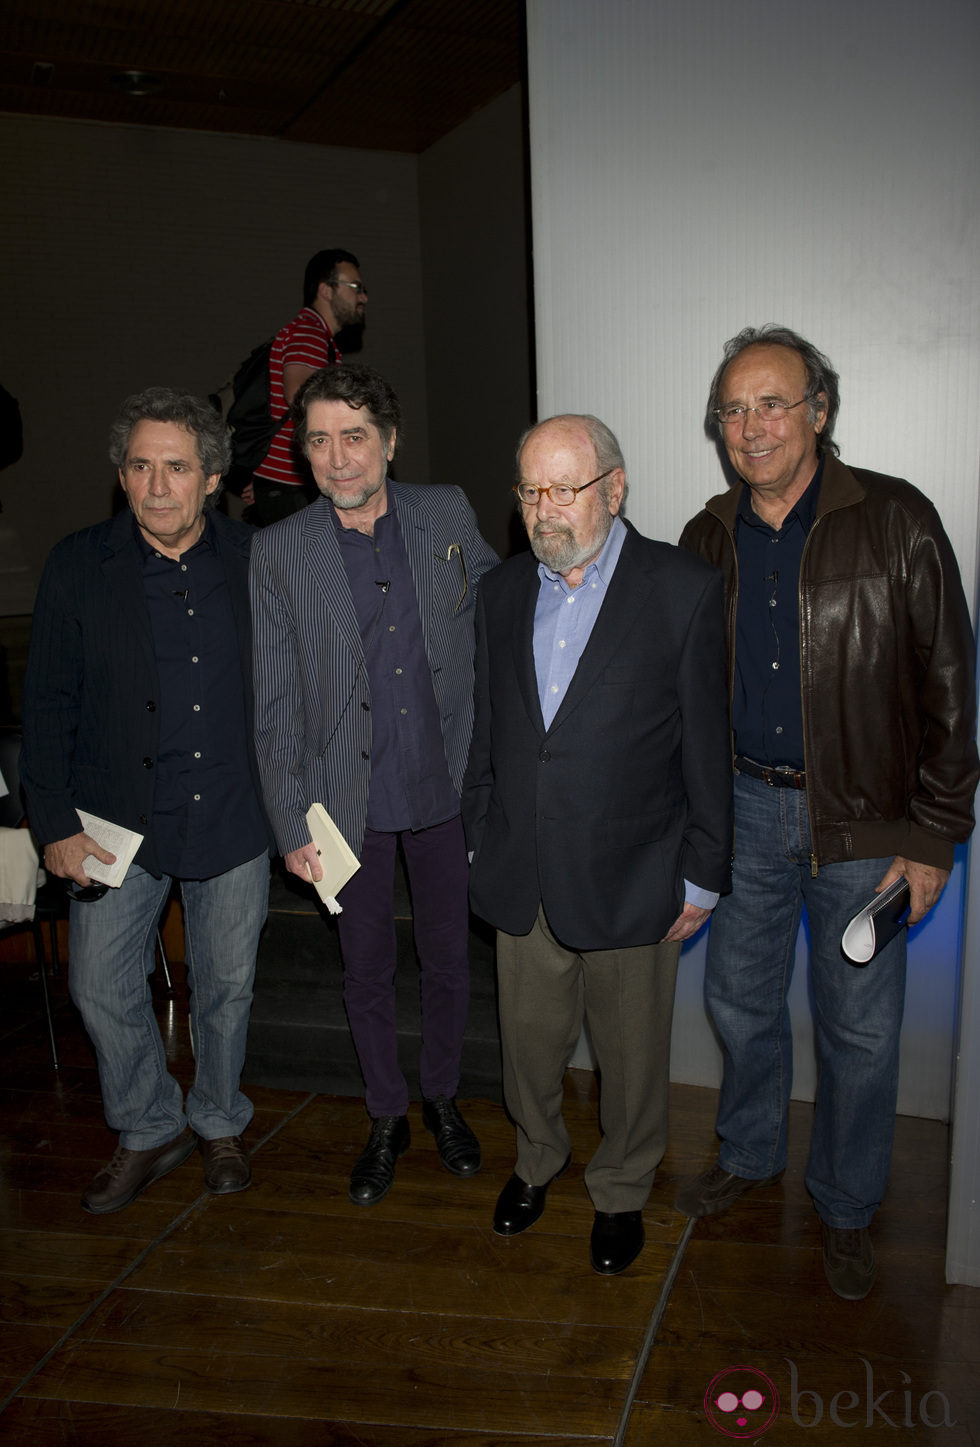 Miguel Ríos, Joaquín Sabina, José Manuel Caballero Bonald y Joan Manuel Serrat